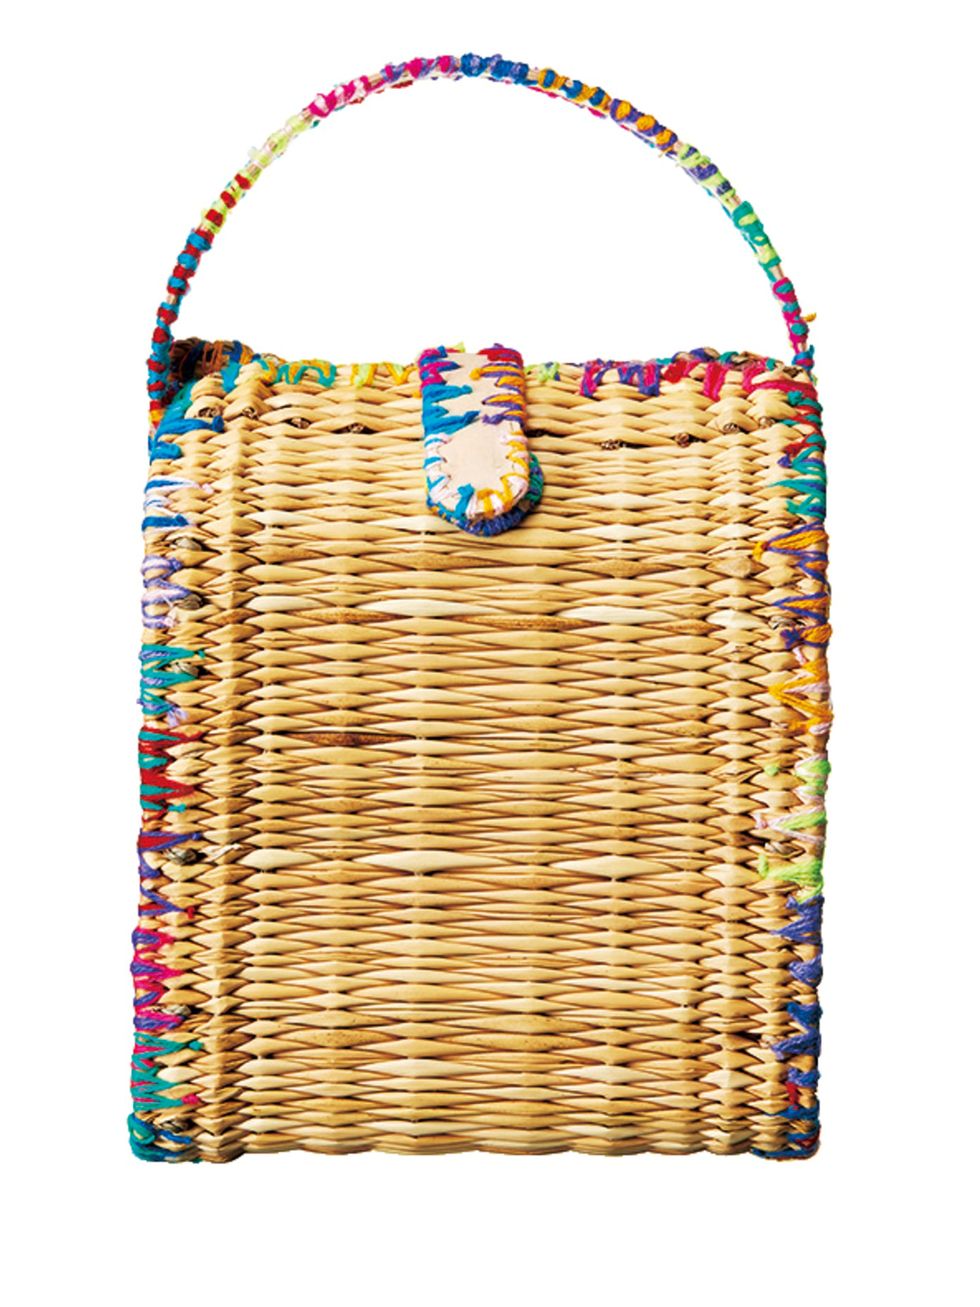 Bag, Wicker, Turquoise, Teal, Aqua, Home accessories, Rectangle, Basket, Shoulder bag, Storage basket, 